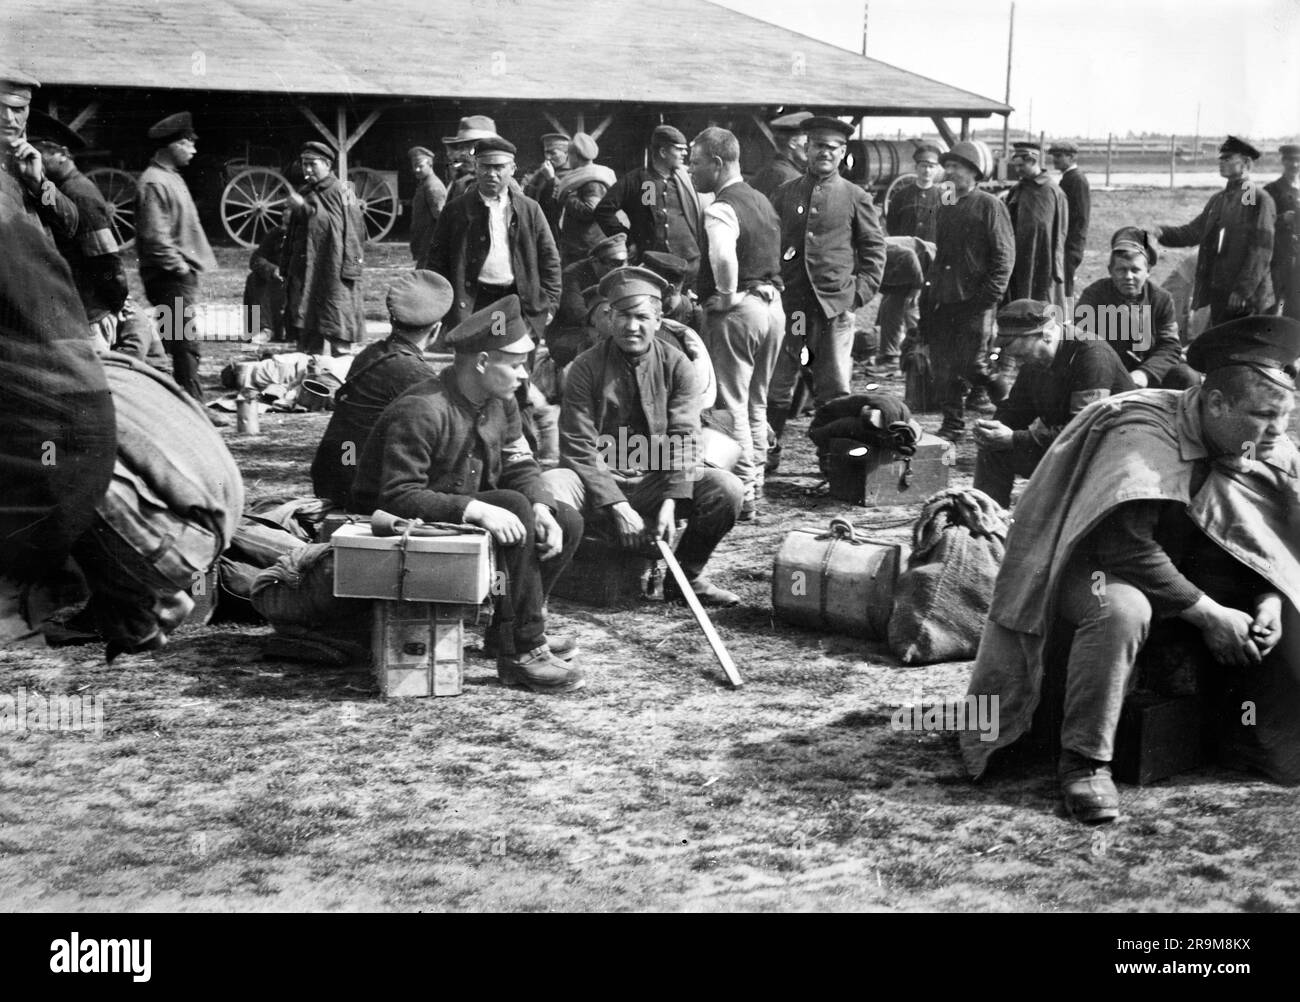 Prisonniers reposant sur leurs bagages en attendant l'ordre de se déplacer vers les points de rapatriement, Lamsdorf, Allemagne, Collection de la Croix-Rouge américaine, 7 juin 1919 Banque D'Images